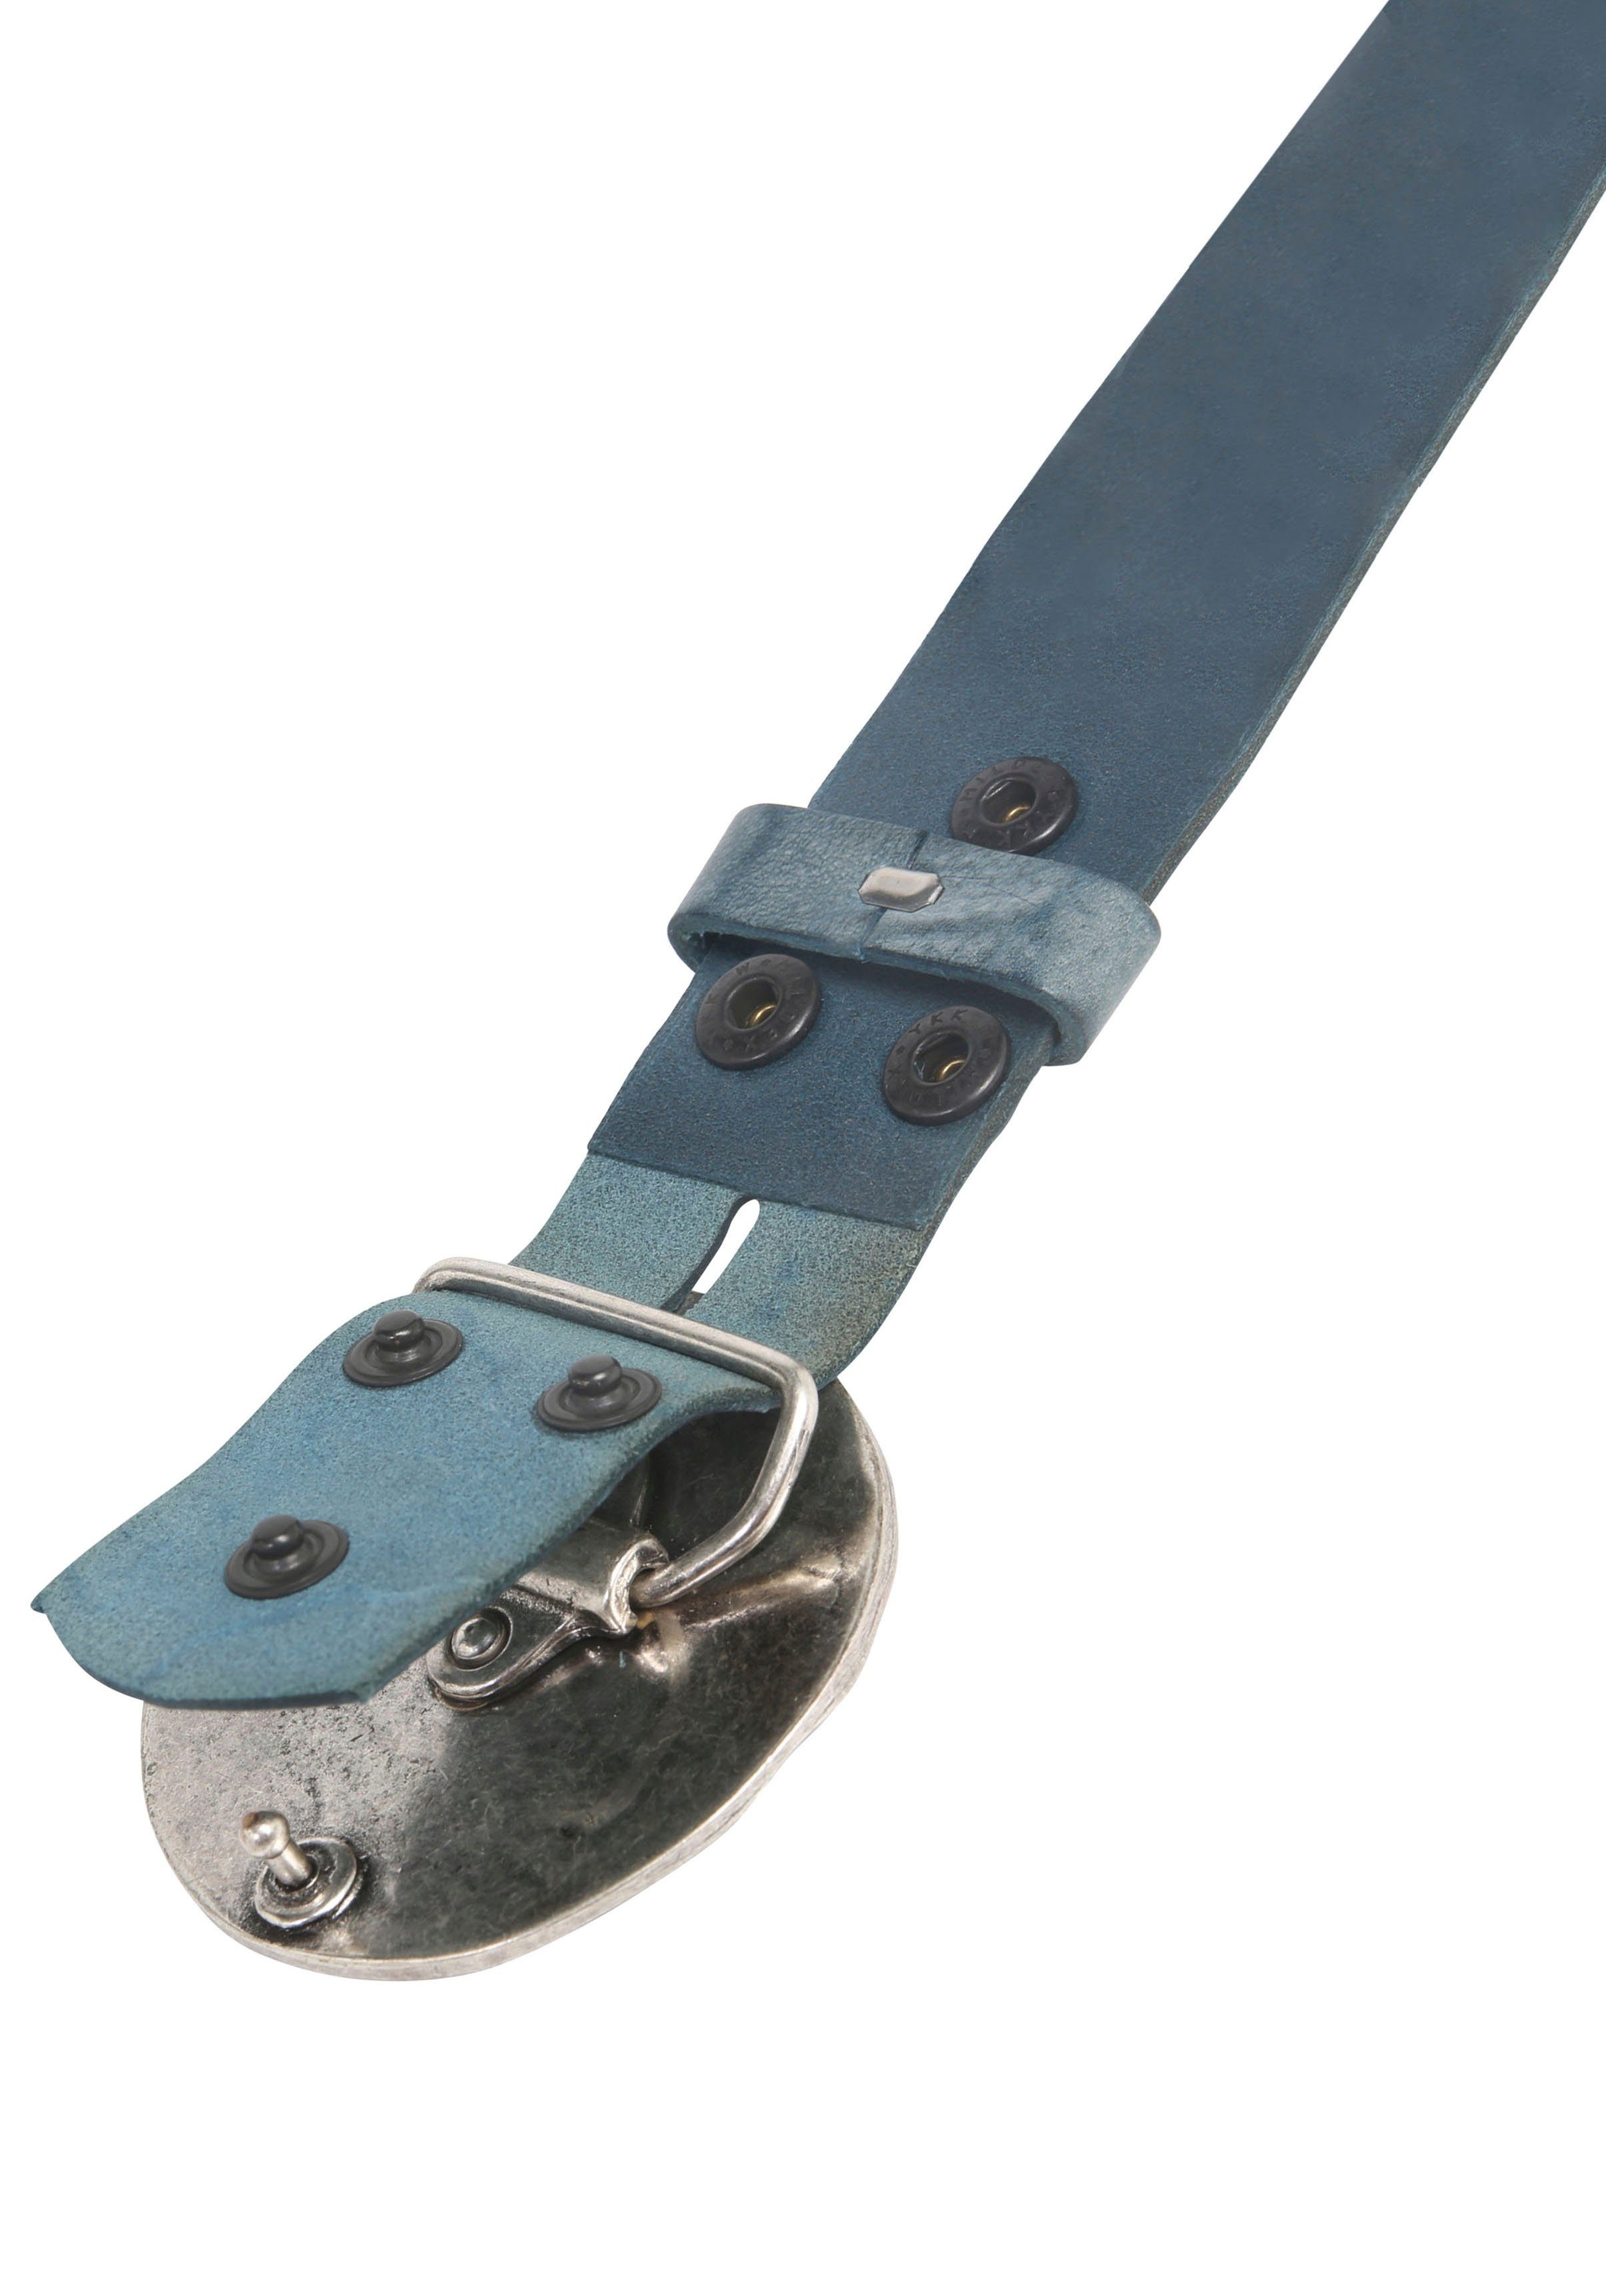 RETTUNGSRING by »Vollmond 019° Ledergürtel mit austauschbarer »Gump Silber« showroom Schließe Jeansblau«